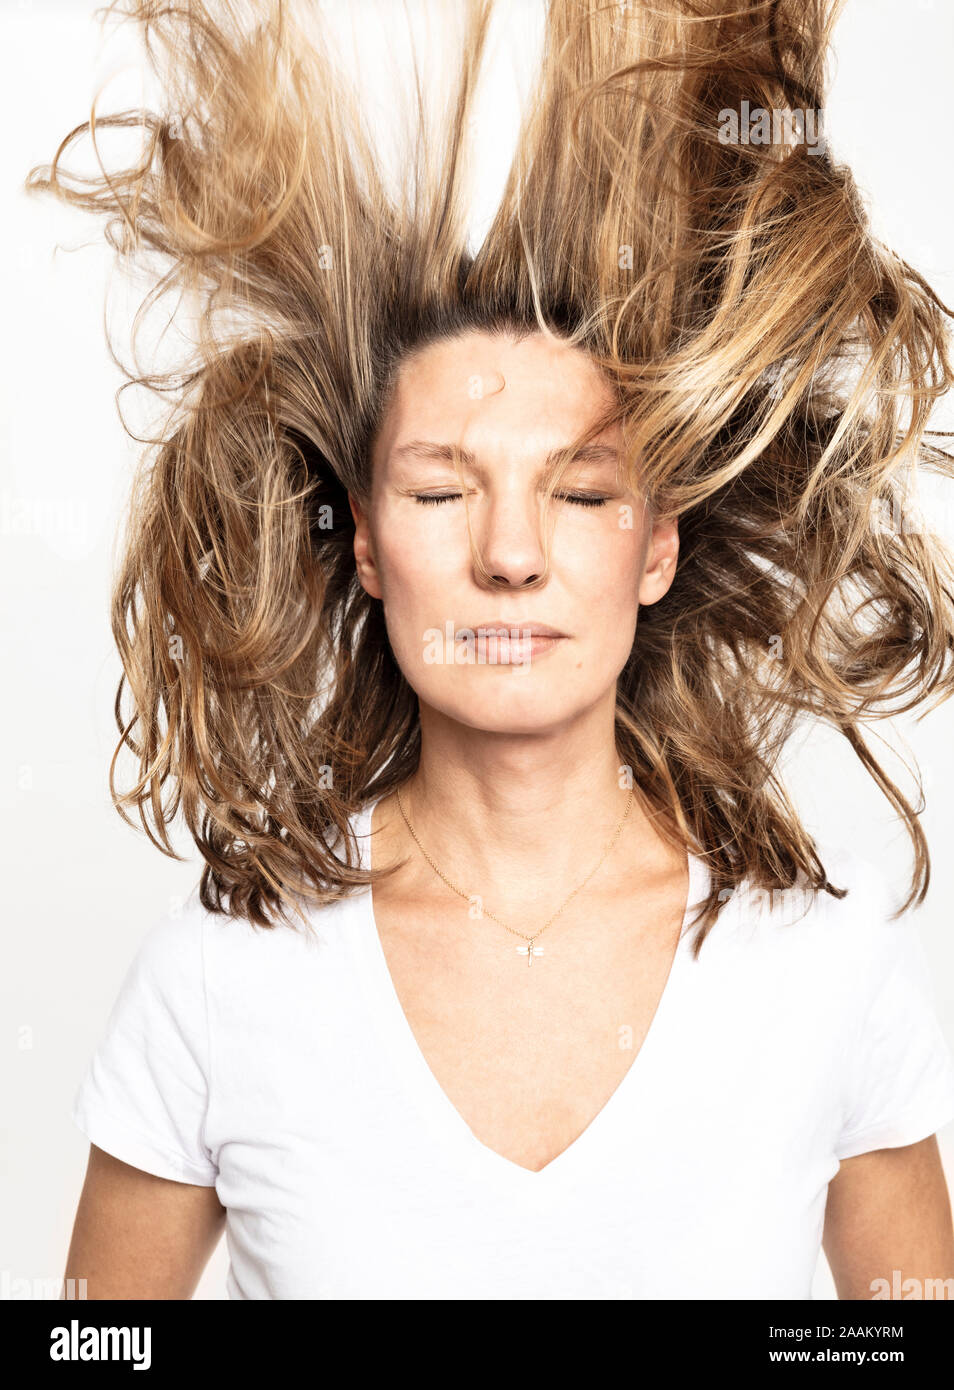 Frau mit fliegenden Haare schließen die Augen, weißer Hintergrund Stockfoto